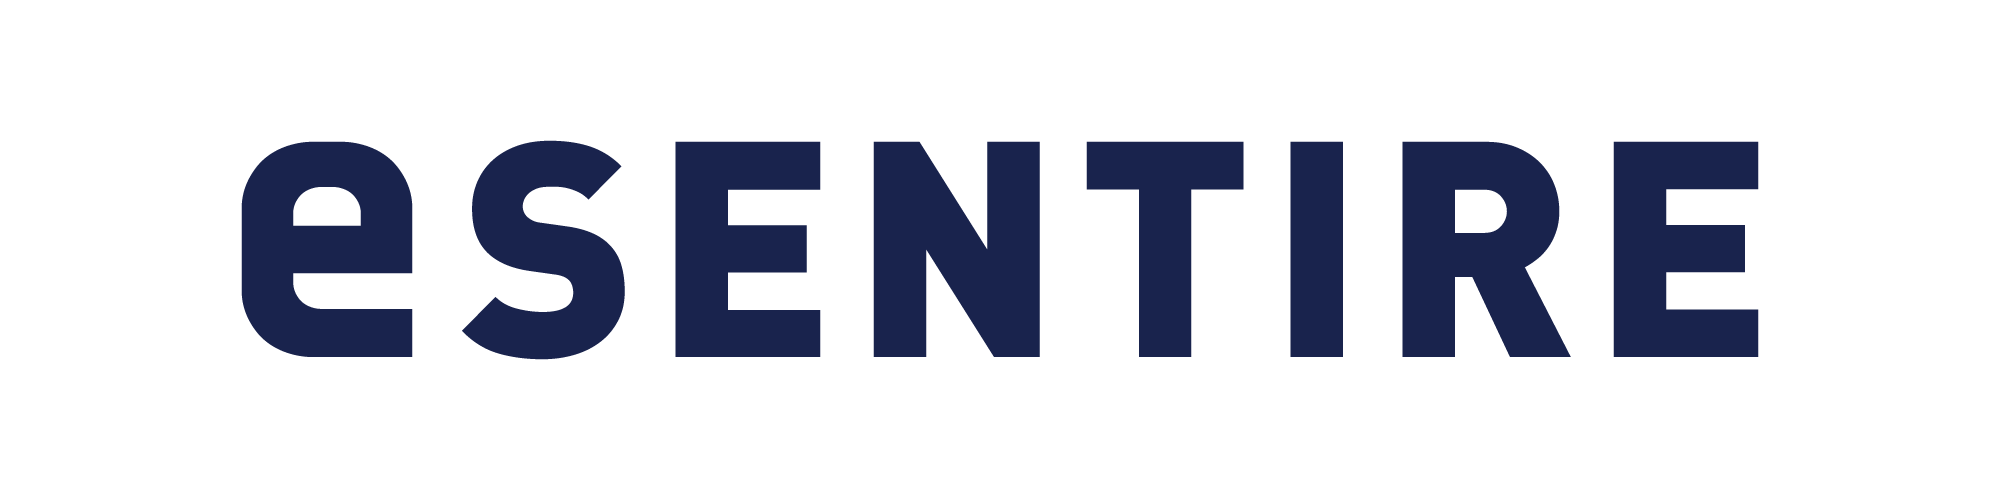 eSentire_Logo_2021_Navy